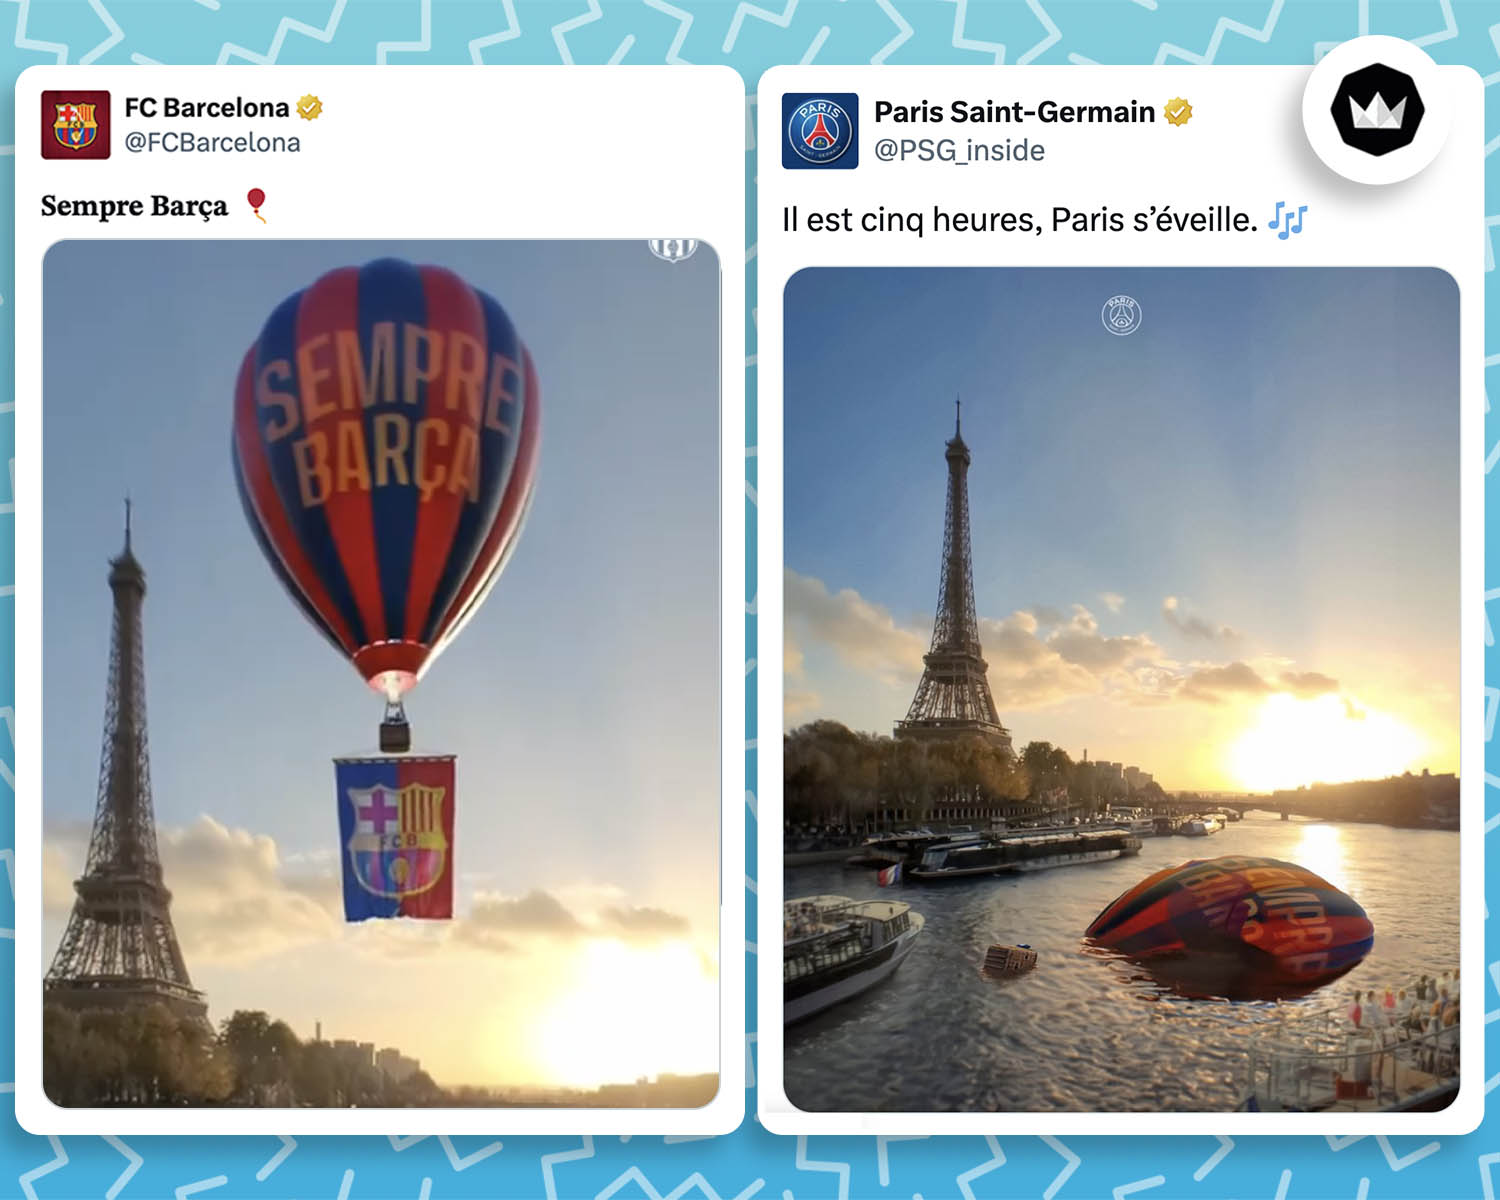 @FCBarcelona :
"𝐒𝐞𝐦𝐩𝐫𝐞 𝐁𝐚𝐫𝐜̧𝐚 🎈"
avec une vidéo d'une montgolfière aux couleurs du Barça survolant la Seine, la tour eiffel est en fond.

@PSG_inside :
"Il est cinq heures, Paris s’éveille. 🎶"
Avec une photo du même plan que la vidéo du Barça, mais avec la montgolfière coulée dans la Seine.